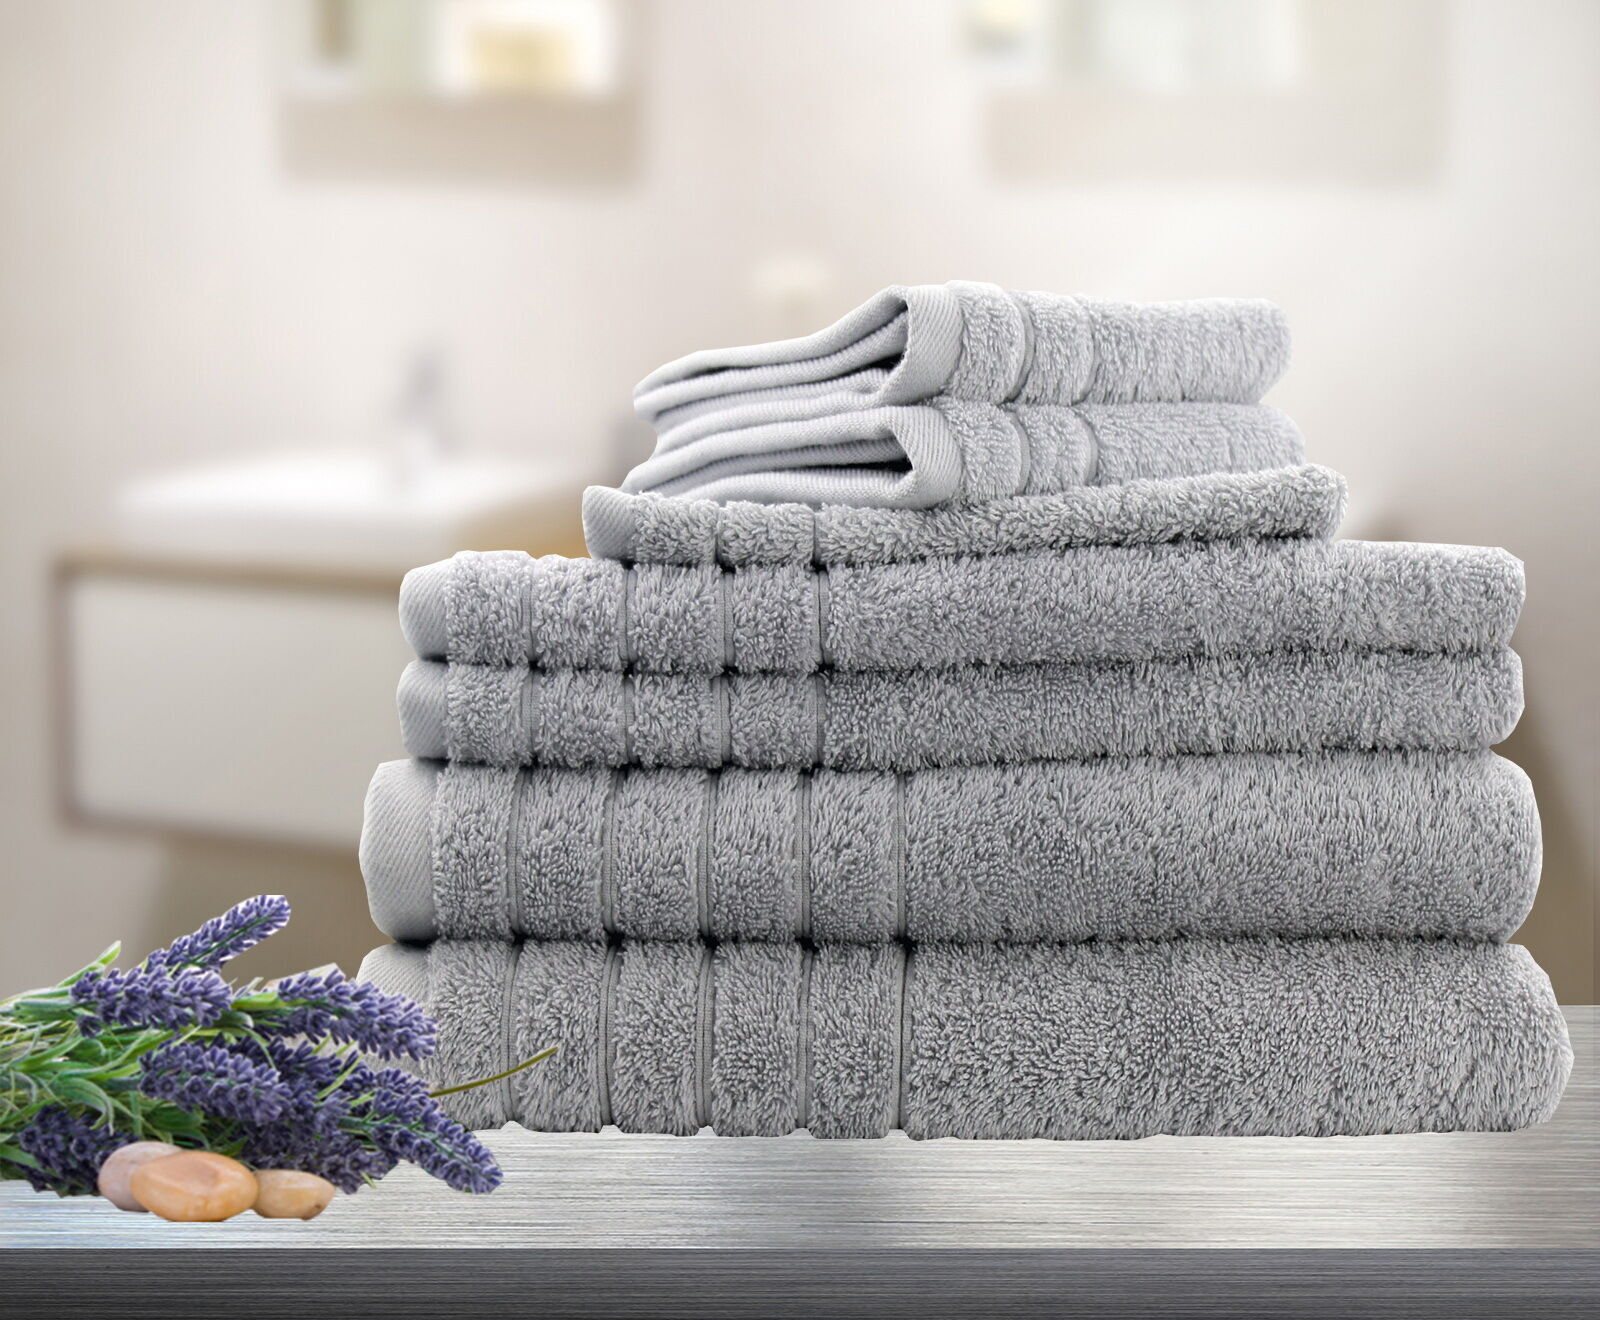 6 Pieces Bath Towels Set Latte 620GSM Pure Cotton Spa Quality 